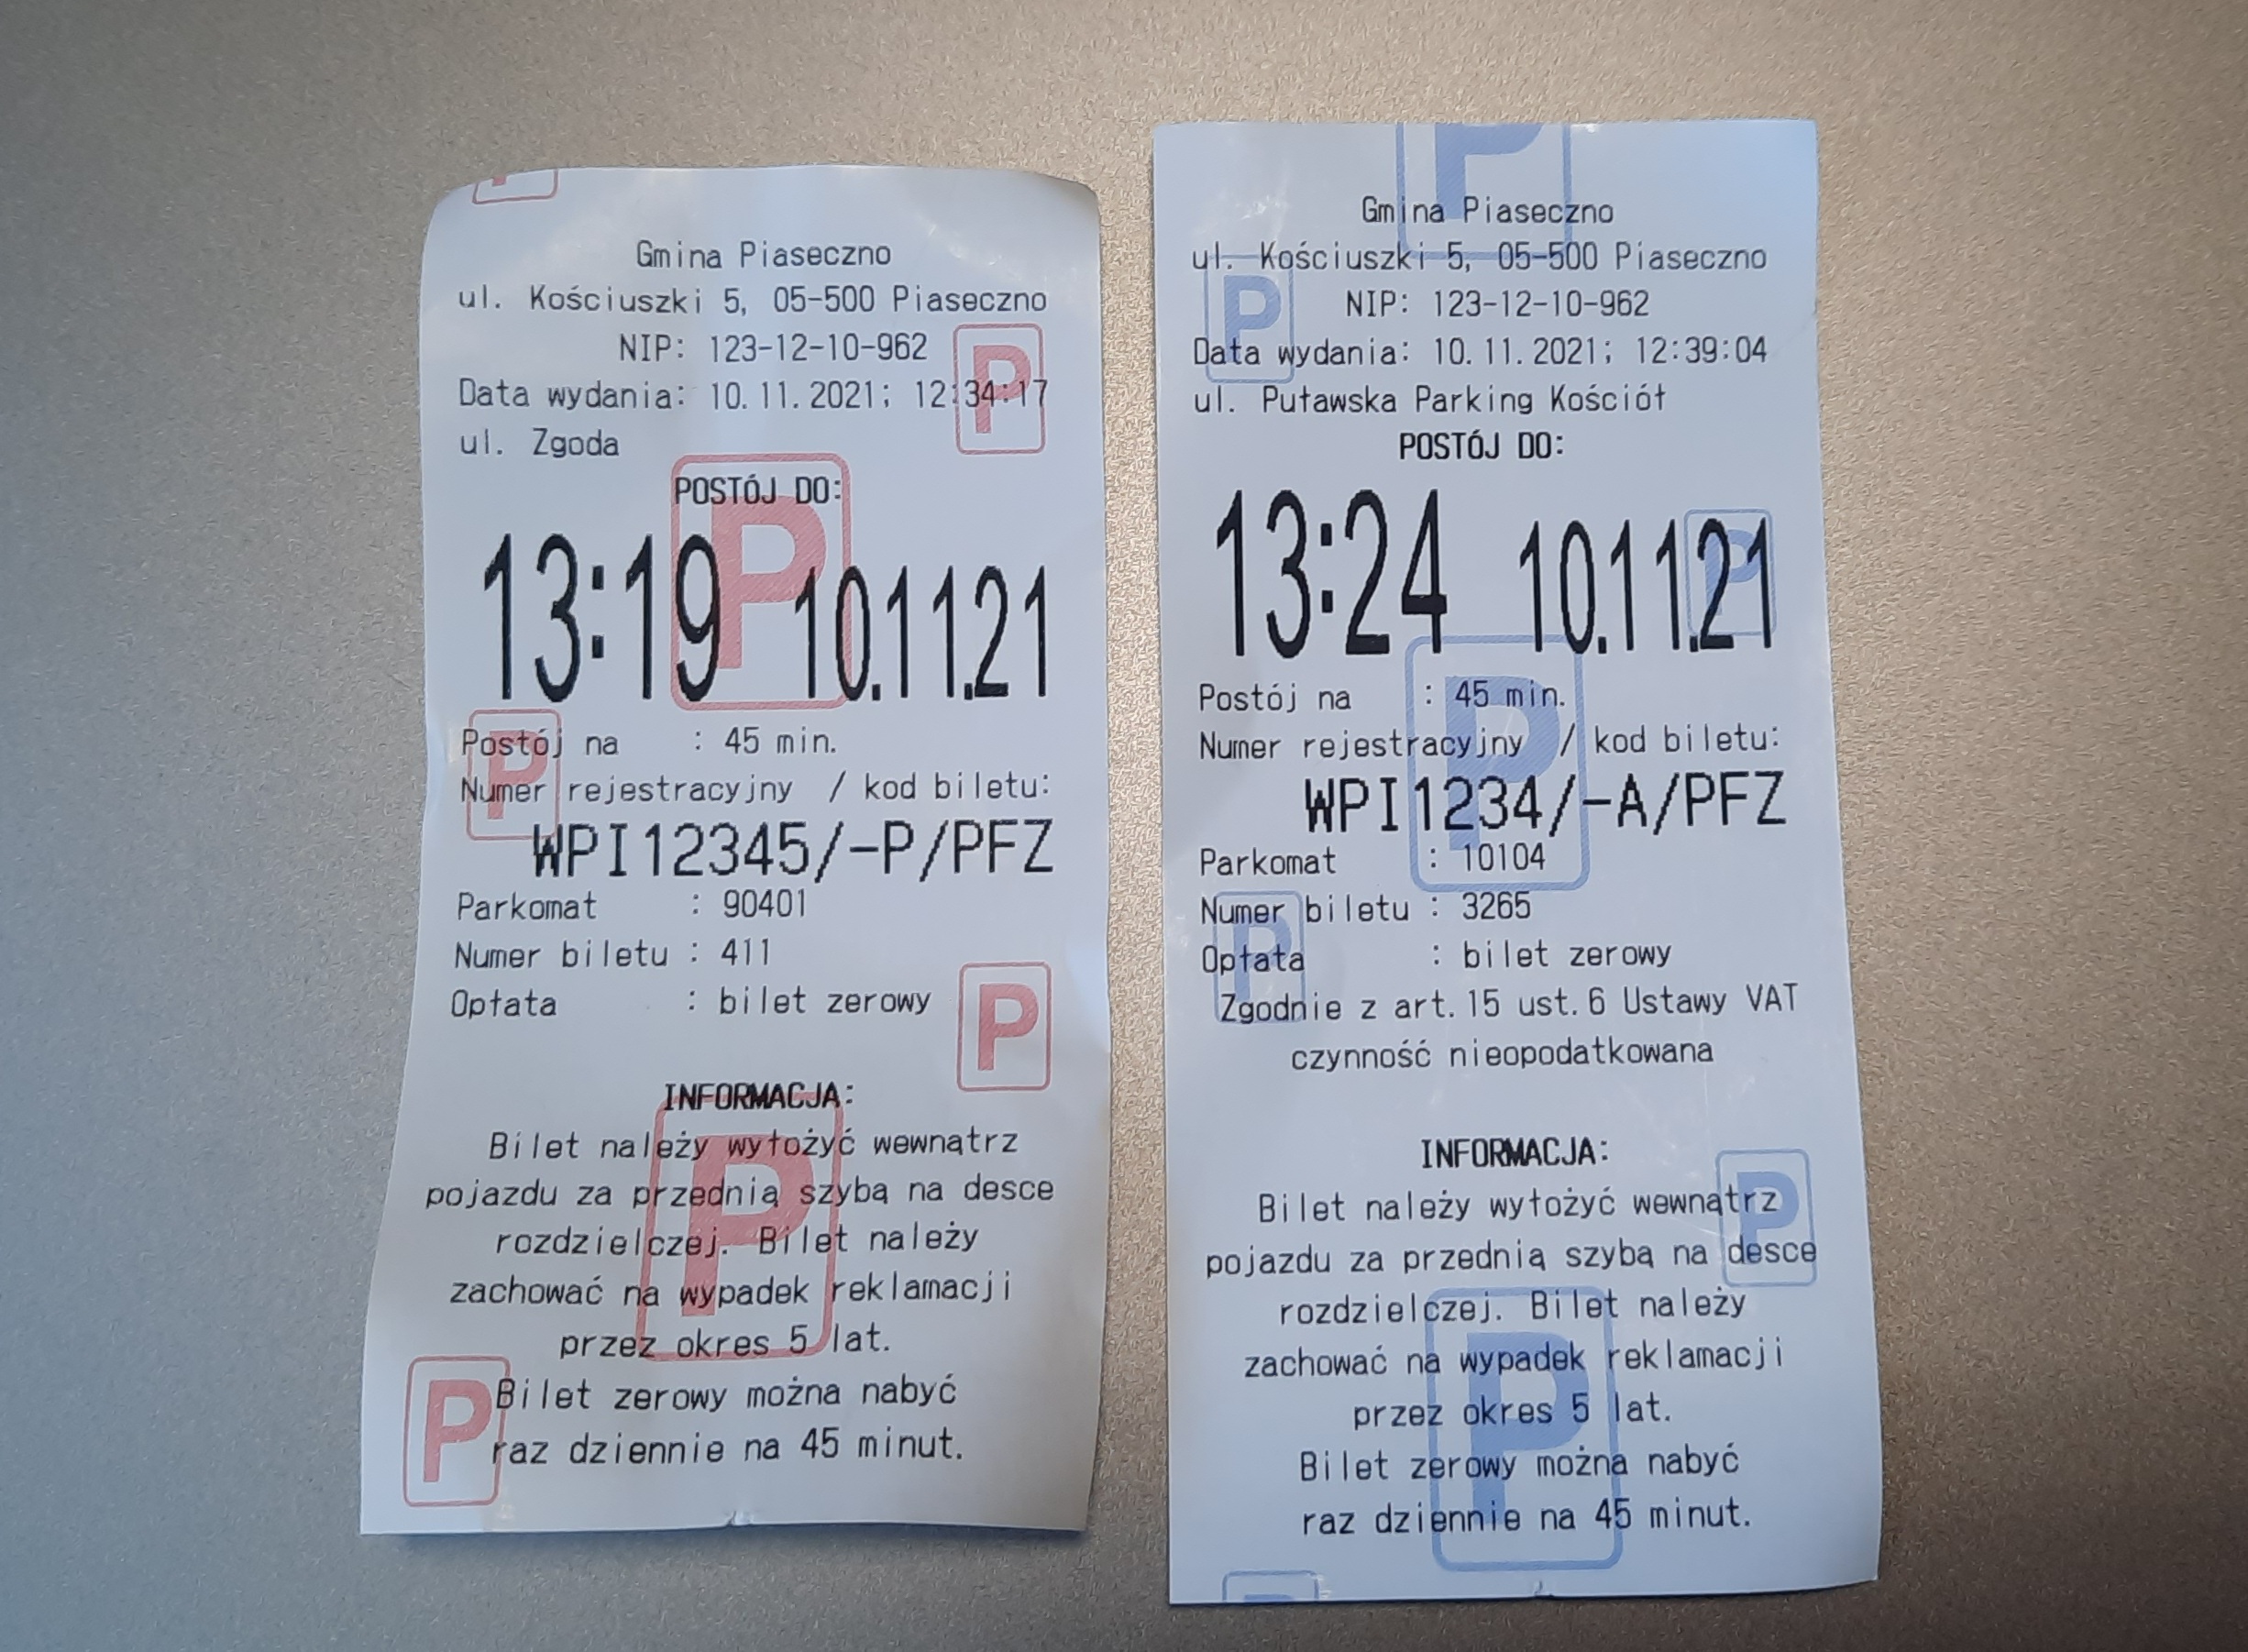 Na miejskich parkingach oraz przy ulicach obowiązują różne bilety postojowe. Na zdjęciu dwa bilety postojowe z różnymi kolorami oznaczającymi różne strefy.